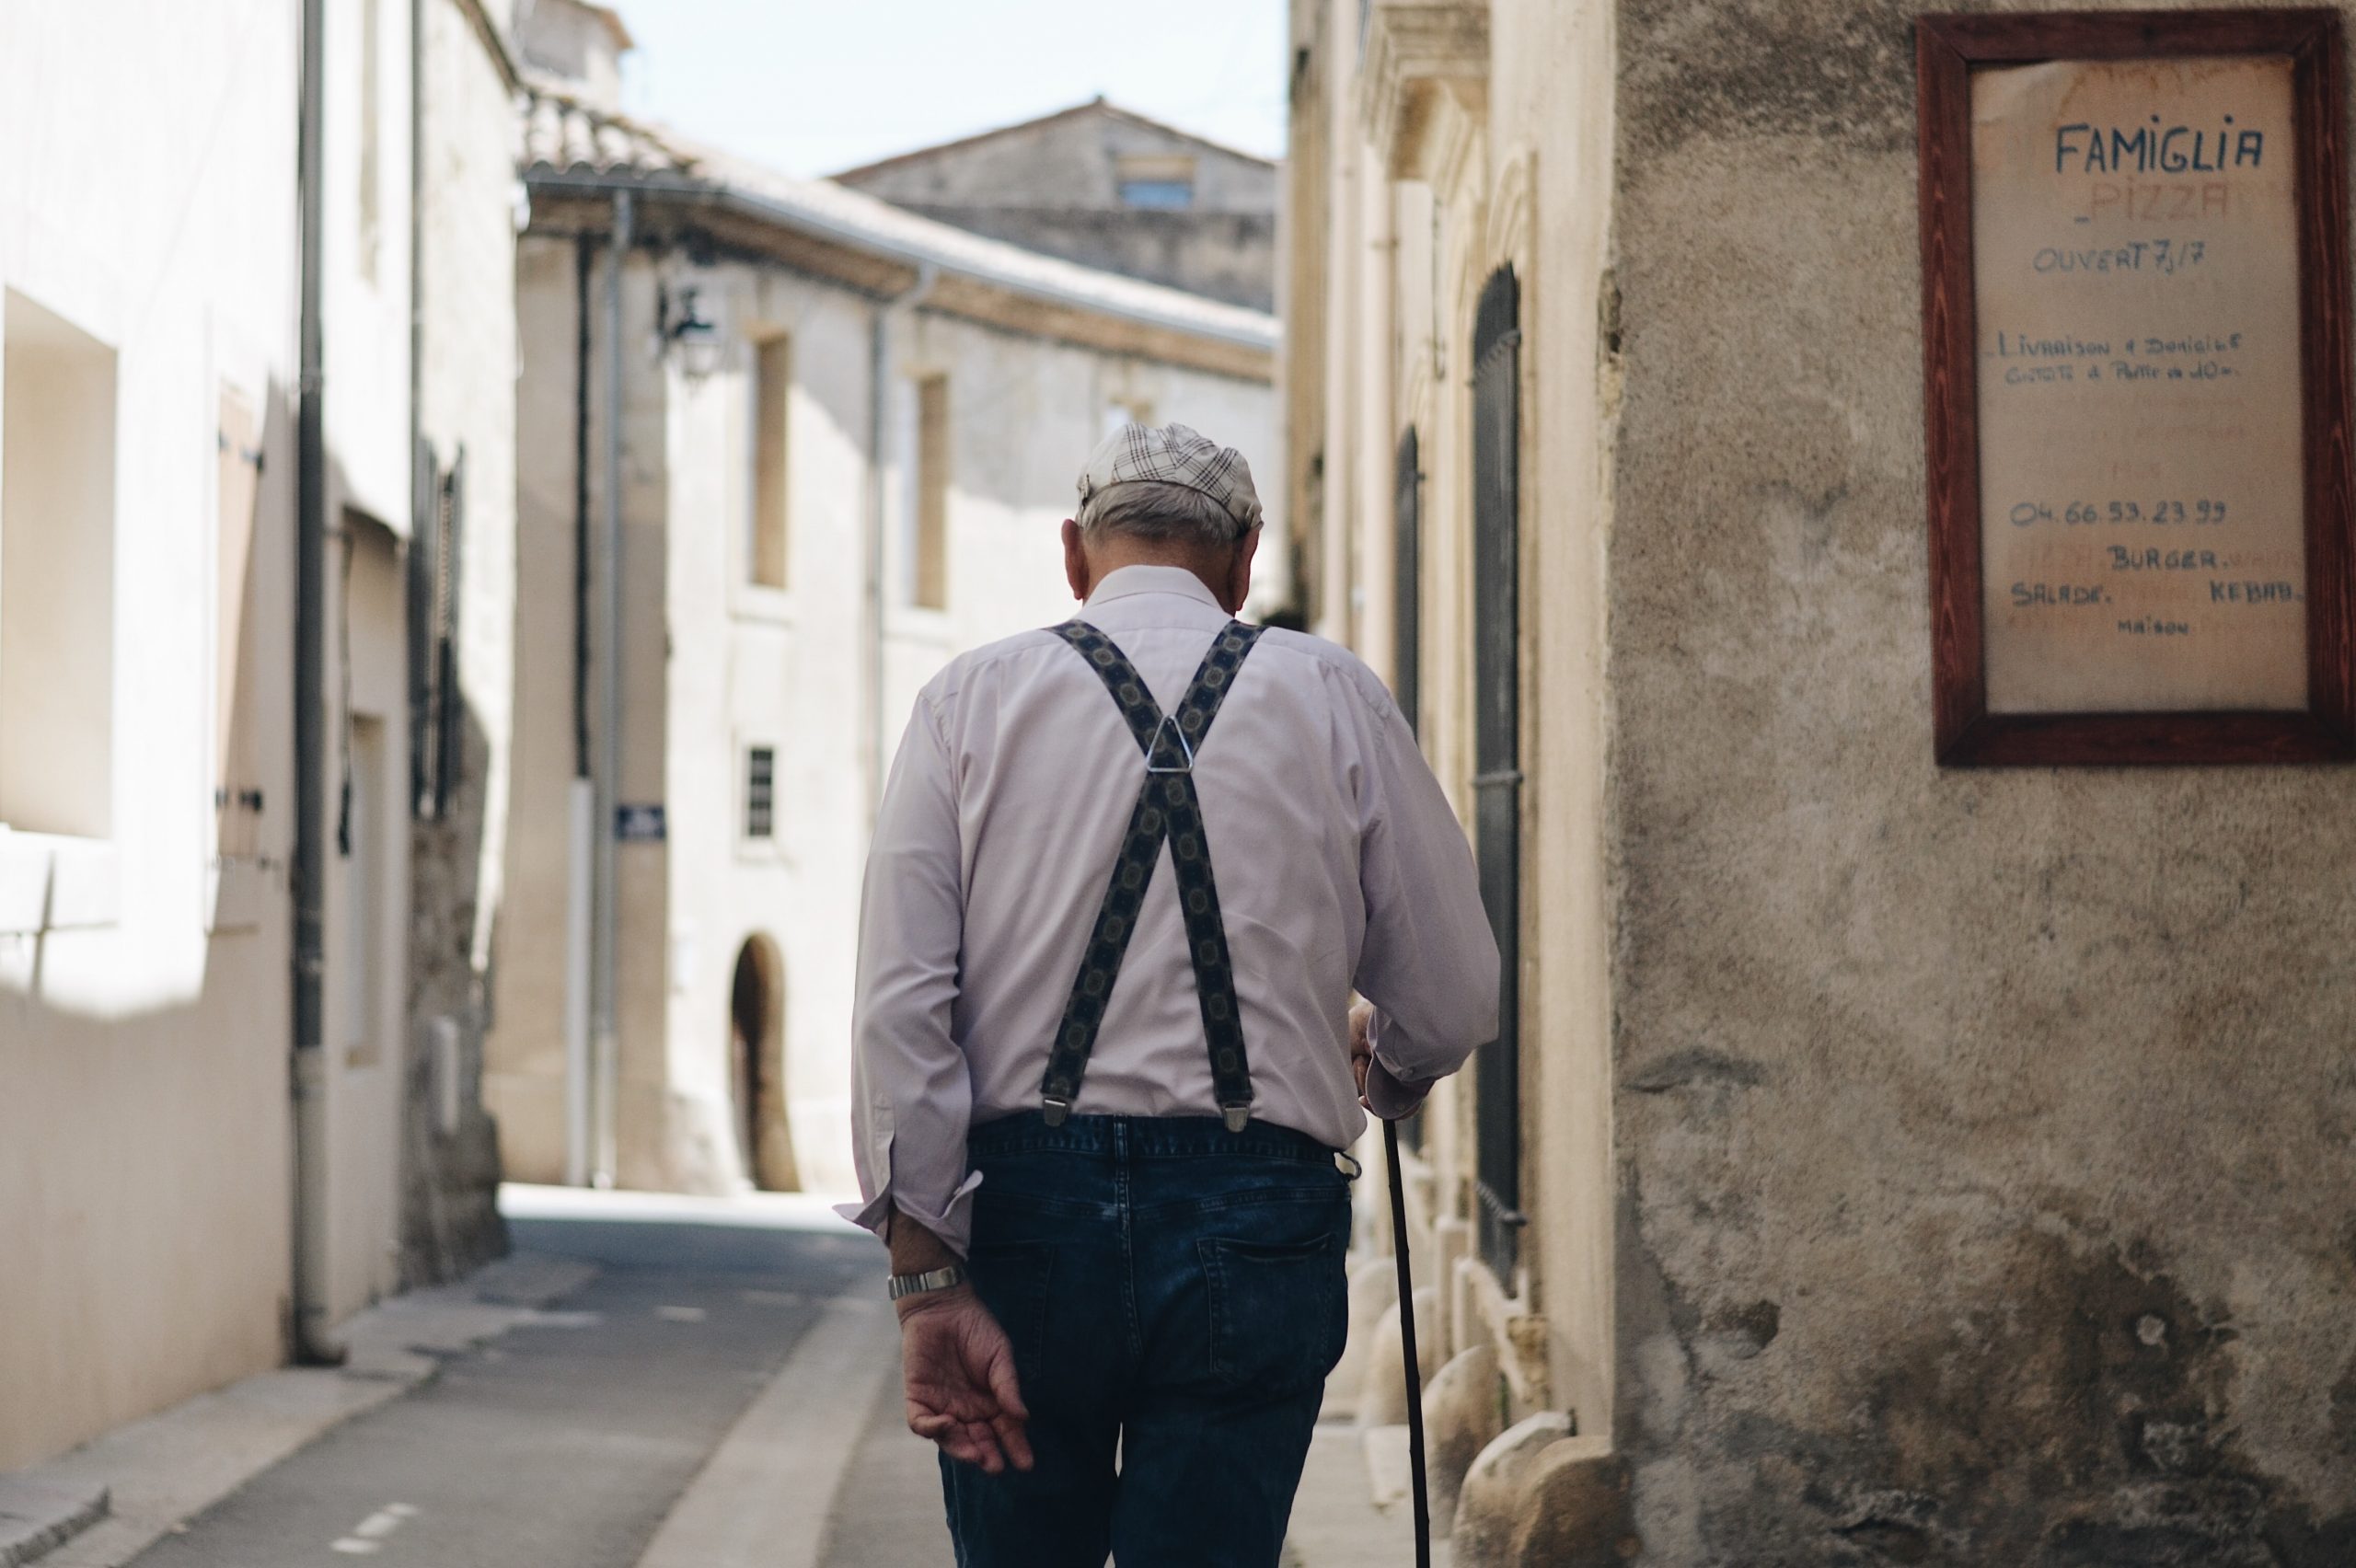 idős ember sétál utcán, famiglia felirat mellette